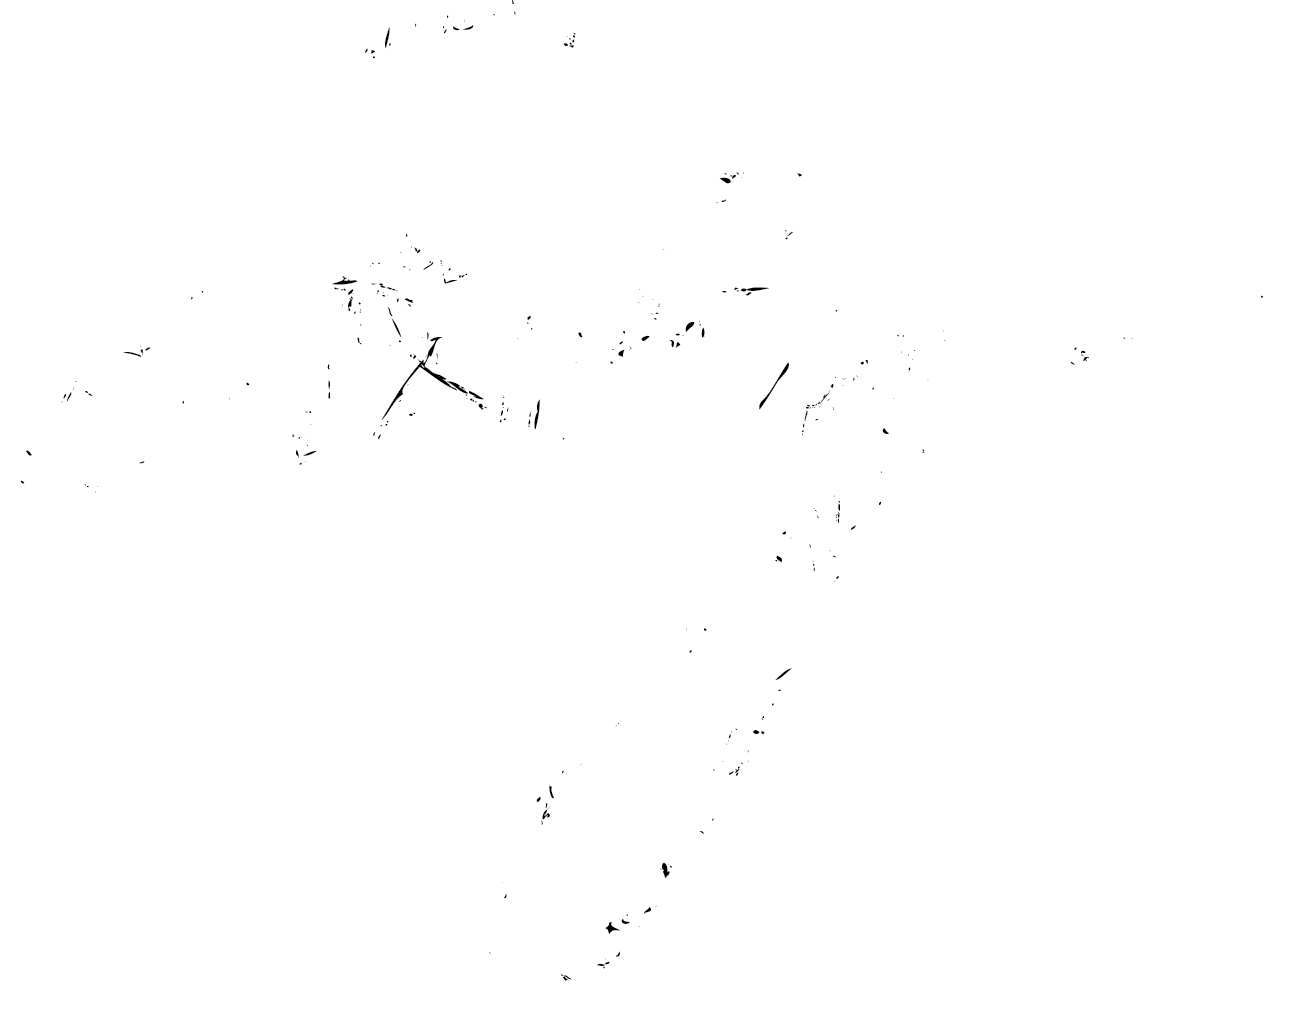 emily wade adams